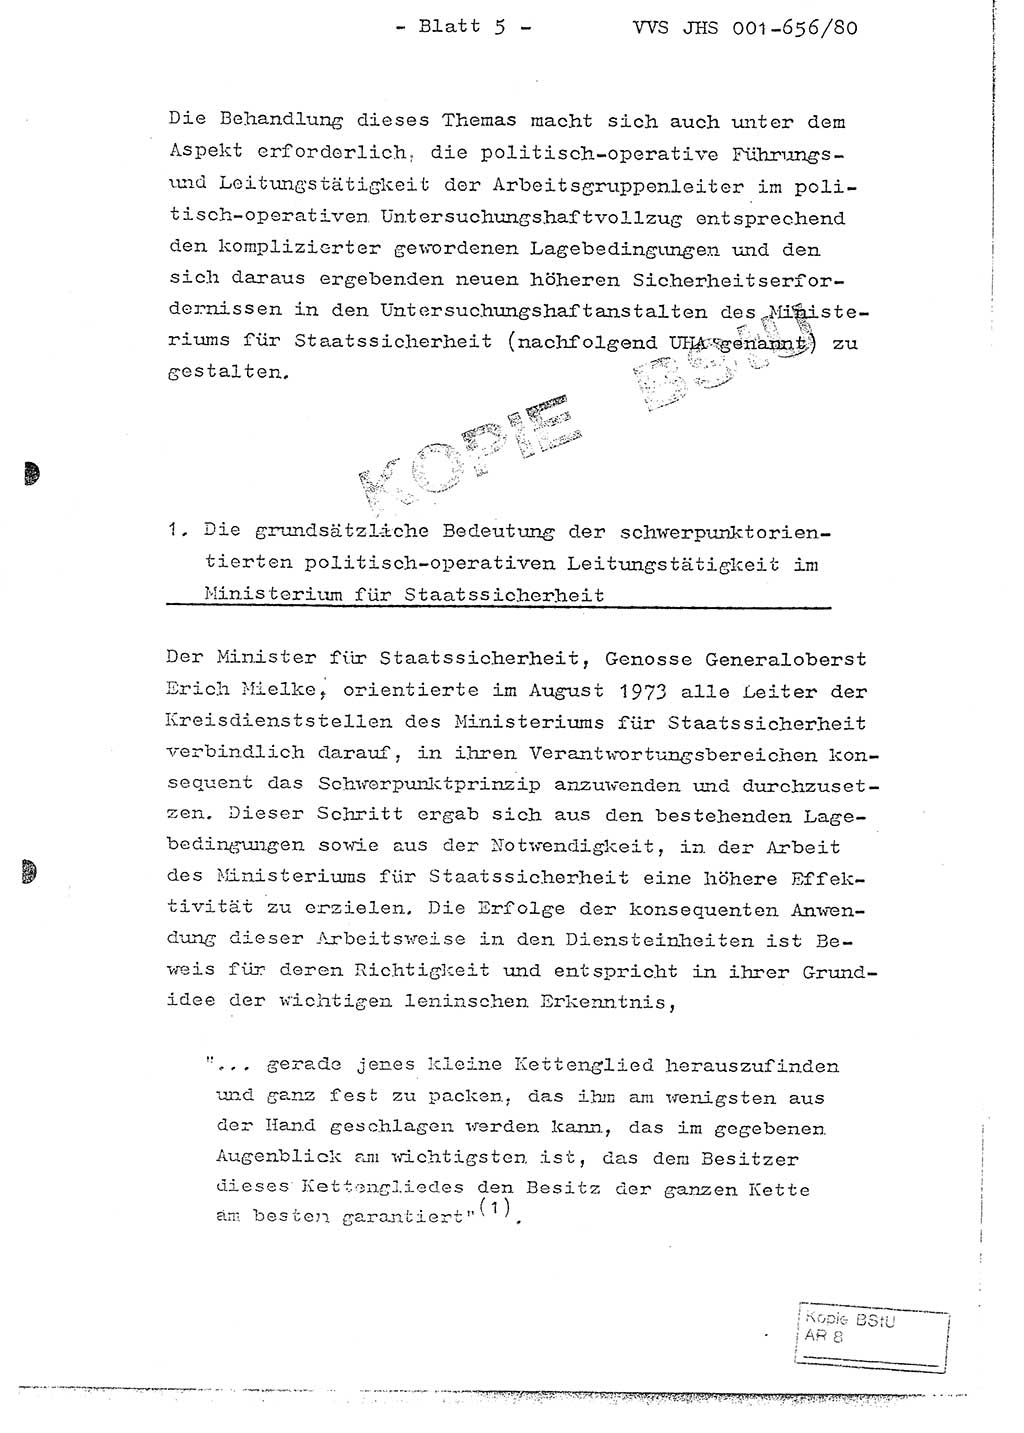 Fachschulabschlußarbeit Unterleutnant Christian Kätzel (Abt. ⅩⅣ), Ministerium für Staatssicherheit (MfS) [Deutsche Demokratische Republik (DDR)], Juristische Hochschule (JHS), Vertrauliche Verschlußsache (VVS) 001-656/80, Potsdam 1980, Blatt 5 (FS-Abschl.-Arb. MfS DDR JHS VVS 001-656/80 1980, Bl. 5)